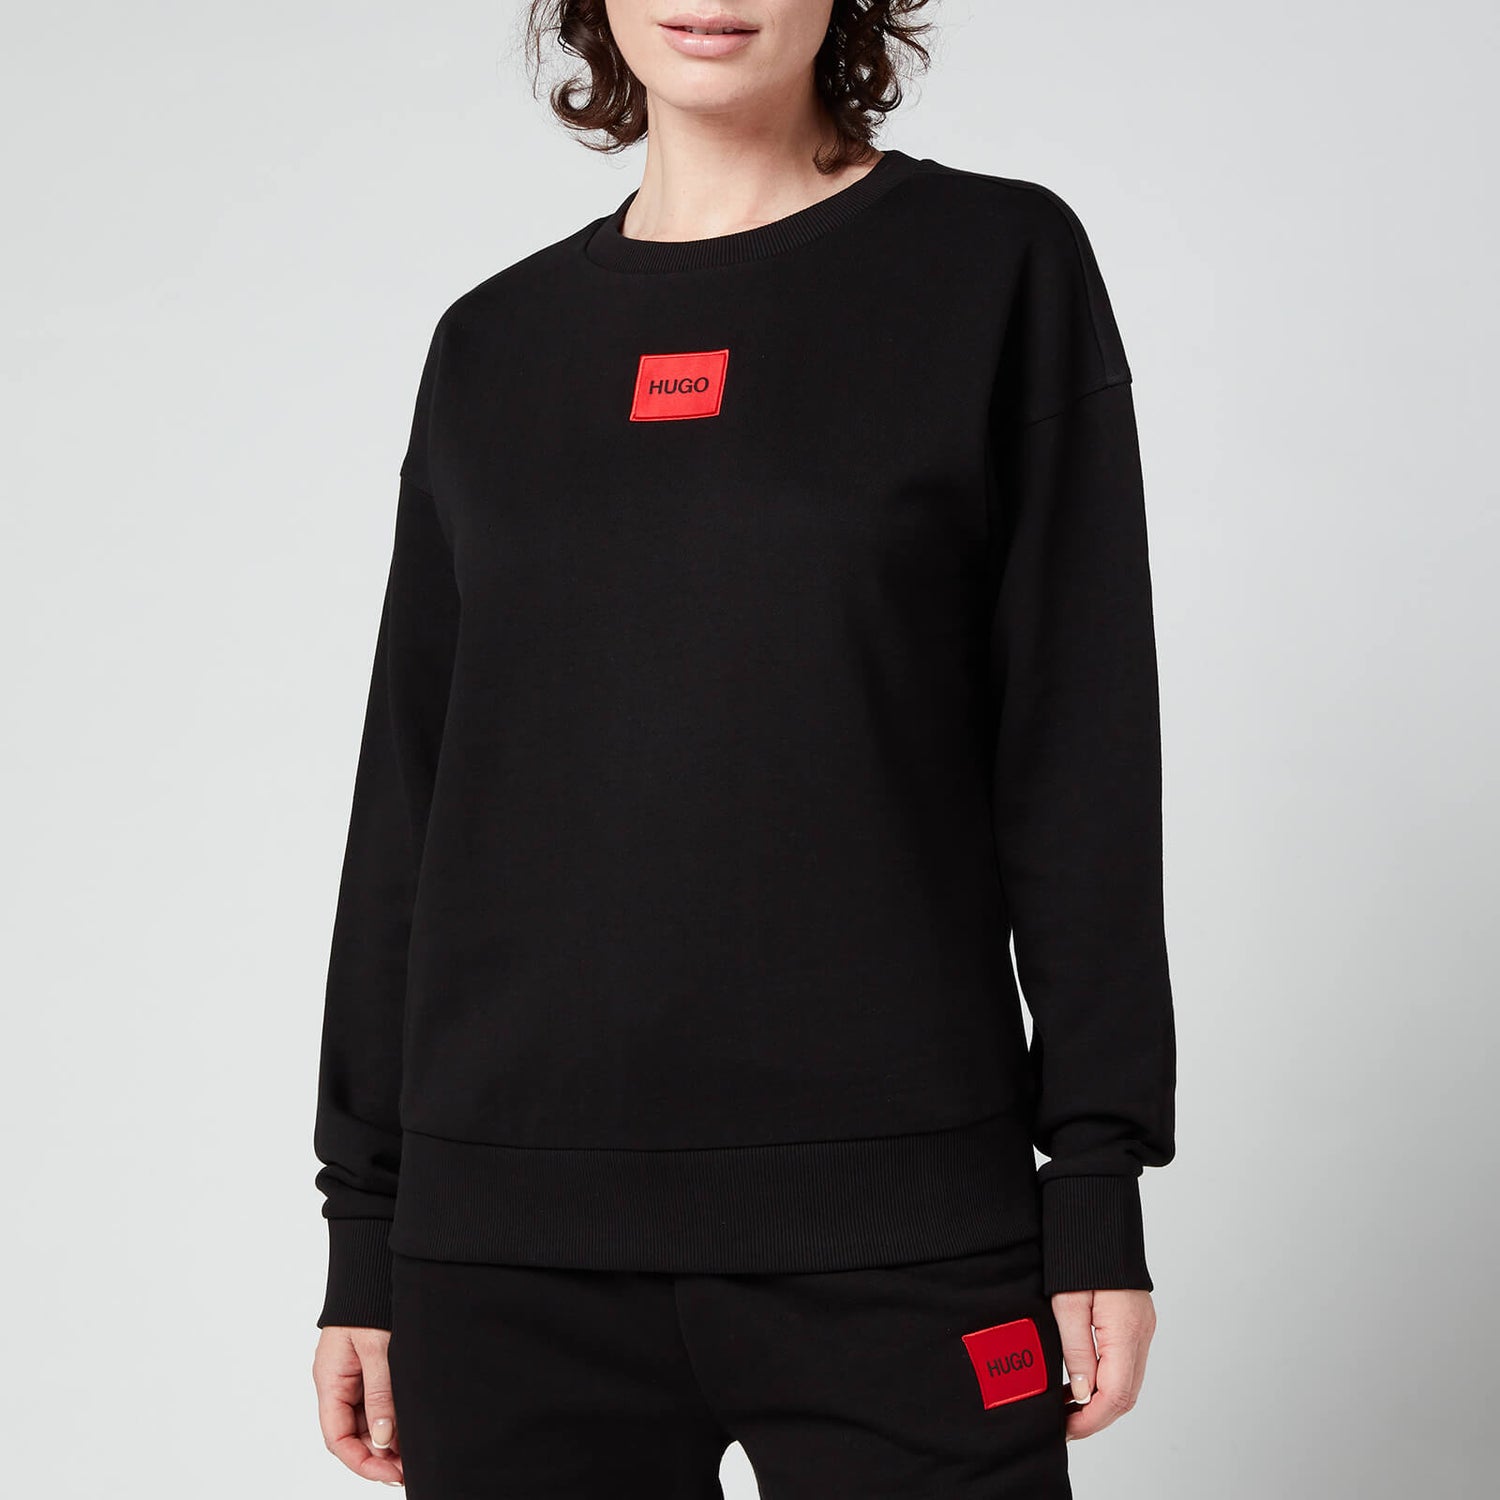 HUGO Women's Nakira Red Label Sweatshirt - Black